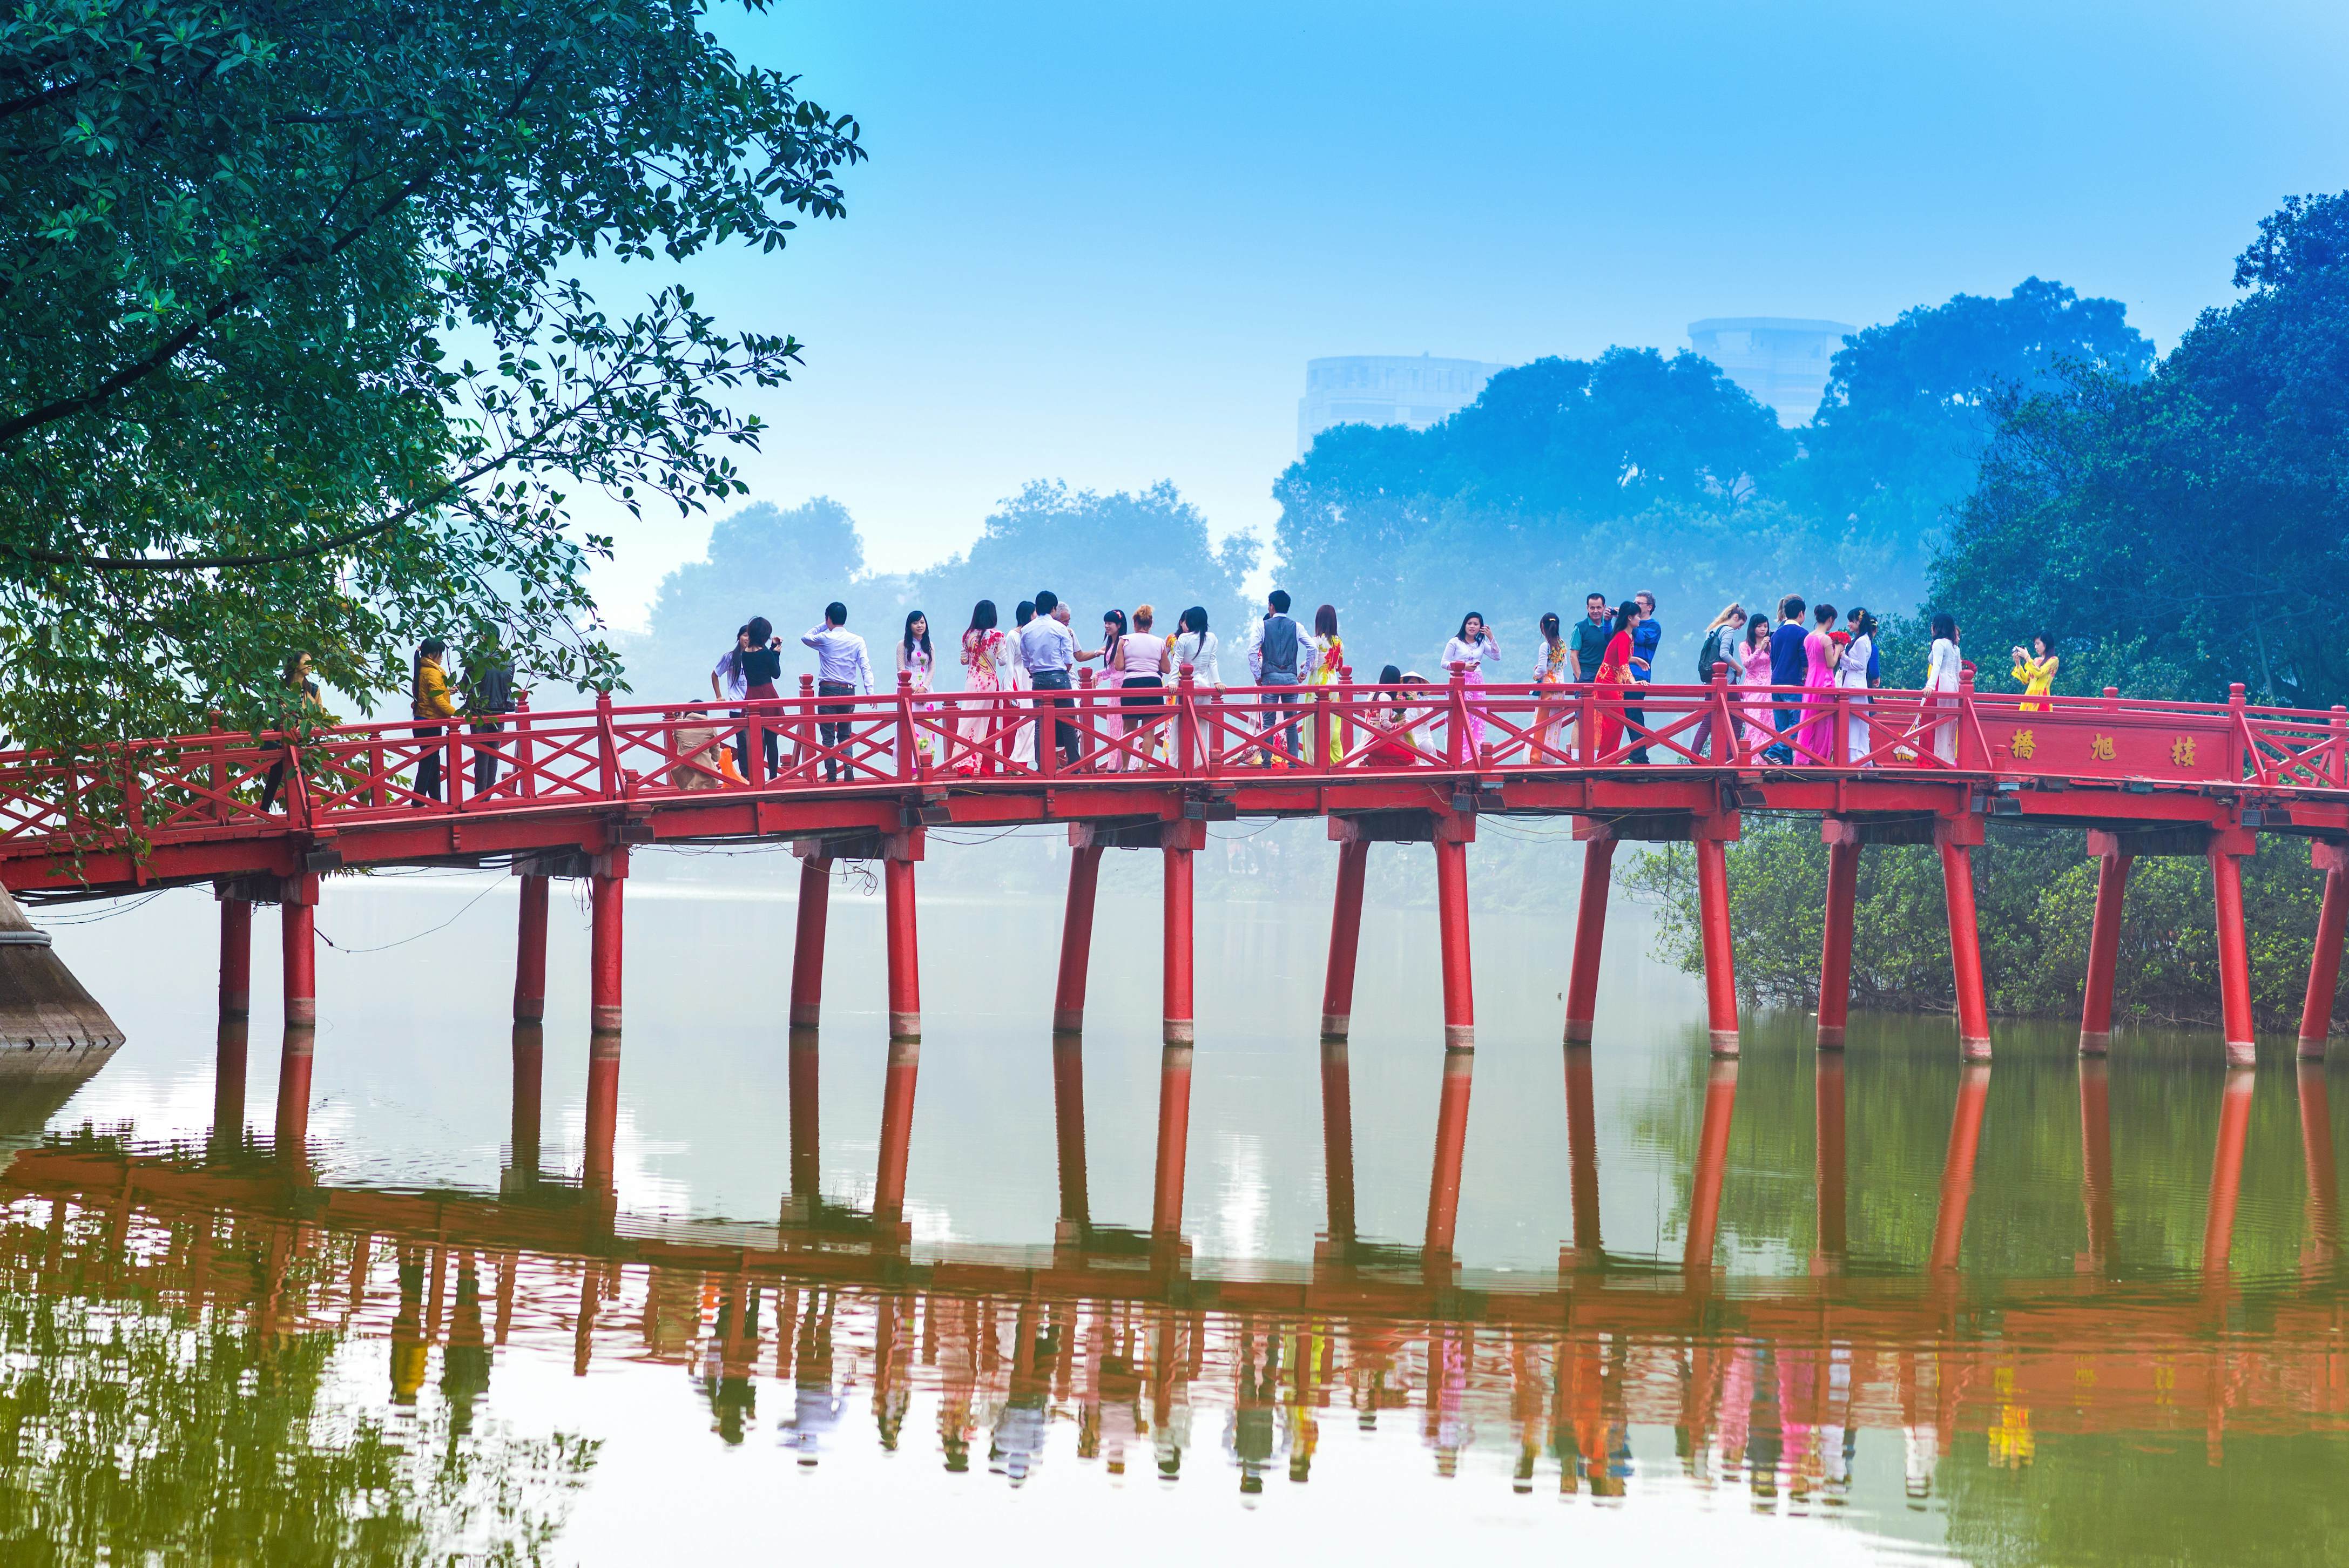 unique places to visit in hanoi